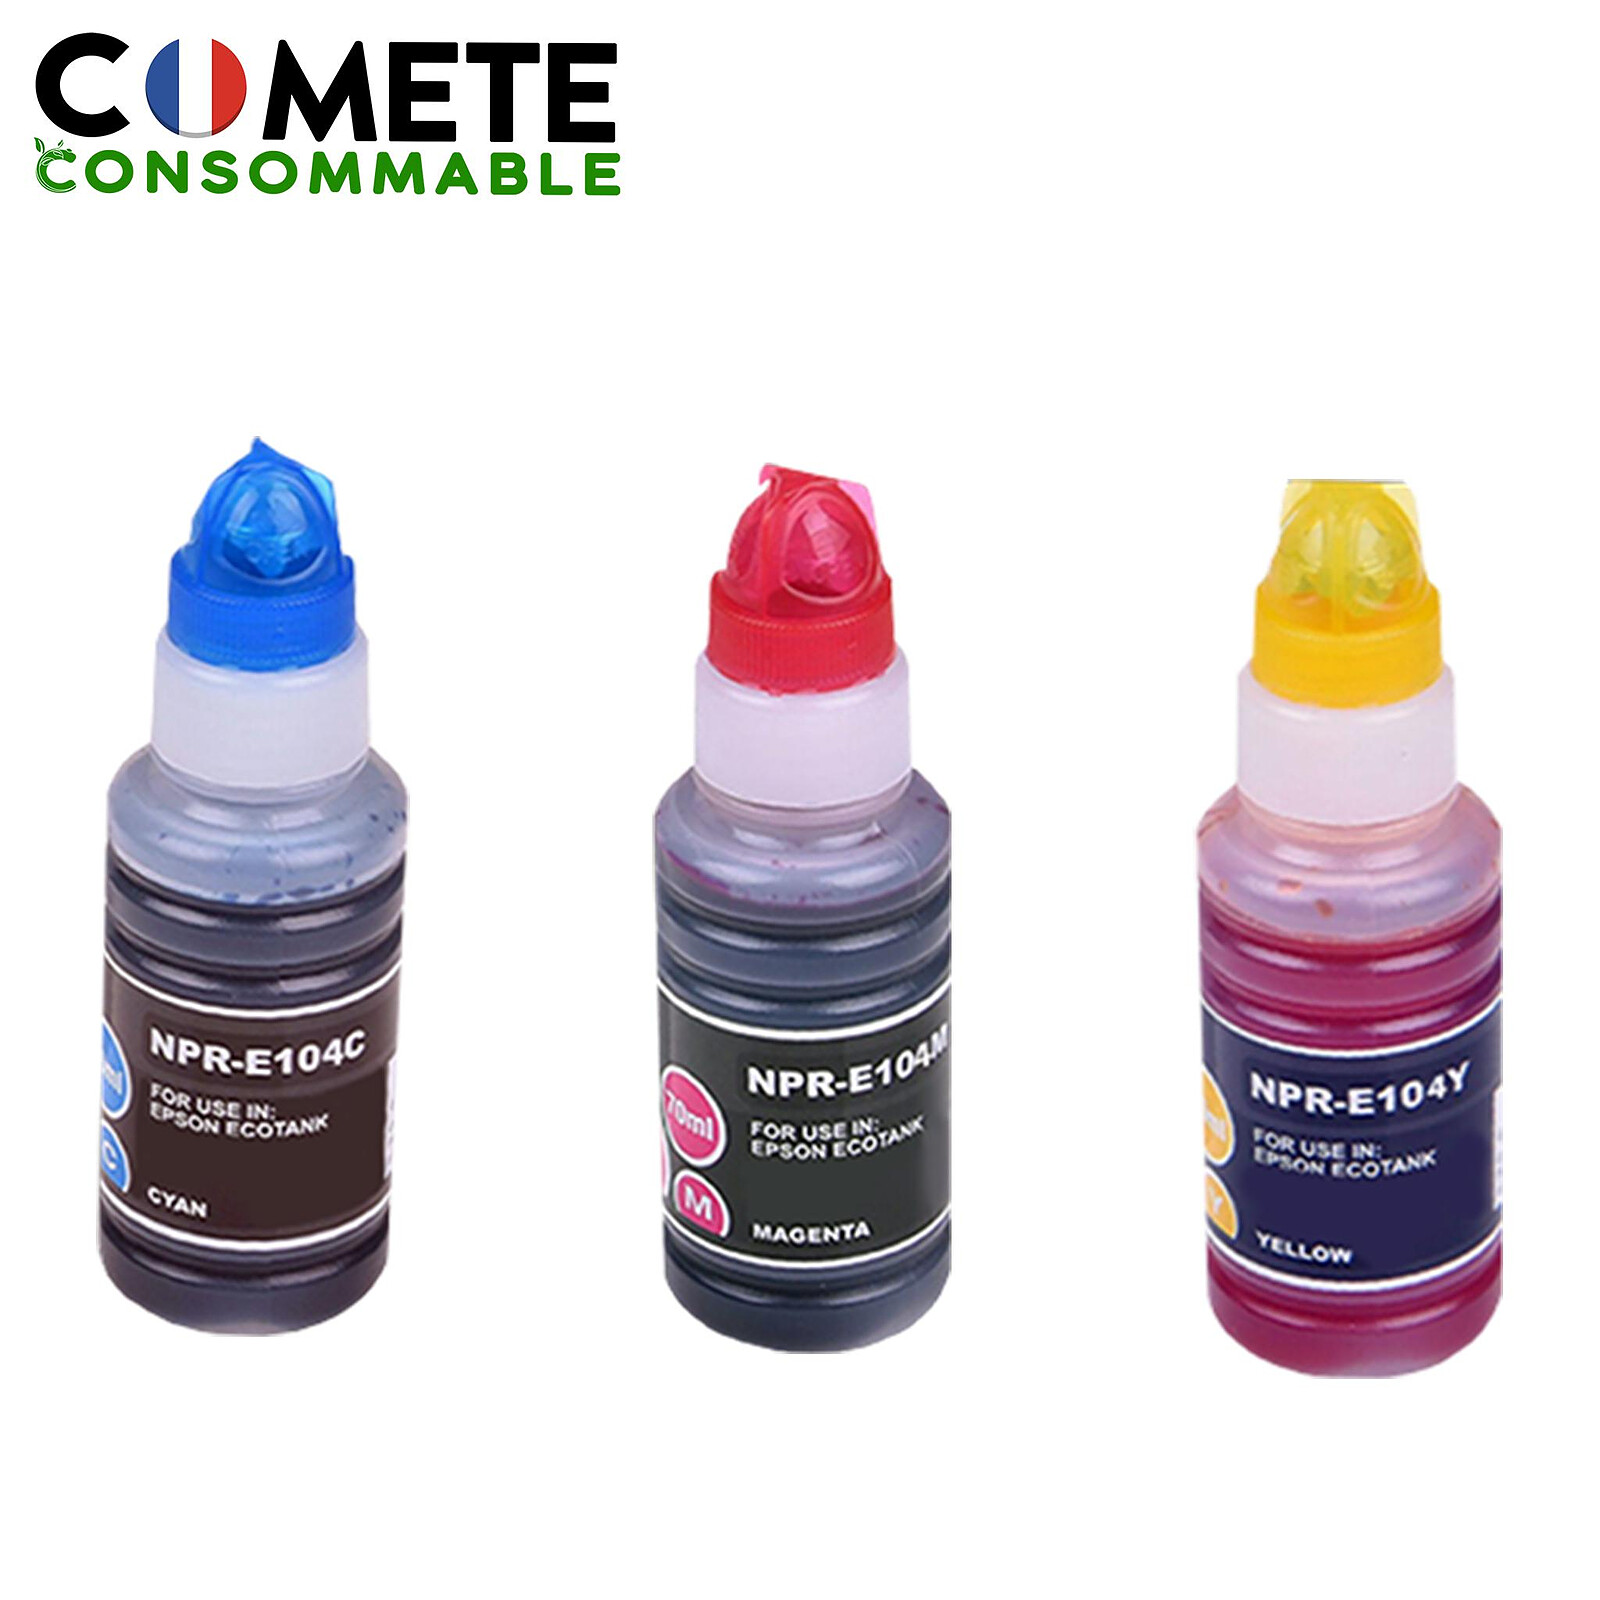 COMETE - 104 - 3 Recharges 104 Compatibles pour imprimantes Epson Ecotank -  Couleur - Marque française - Cartouche imprimante - LDLC